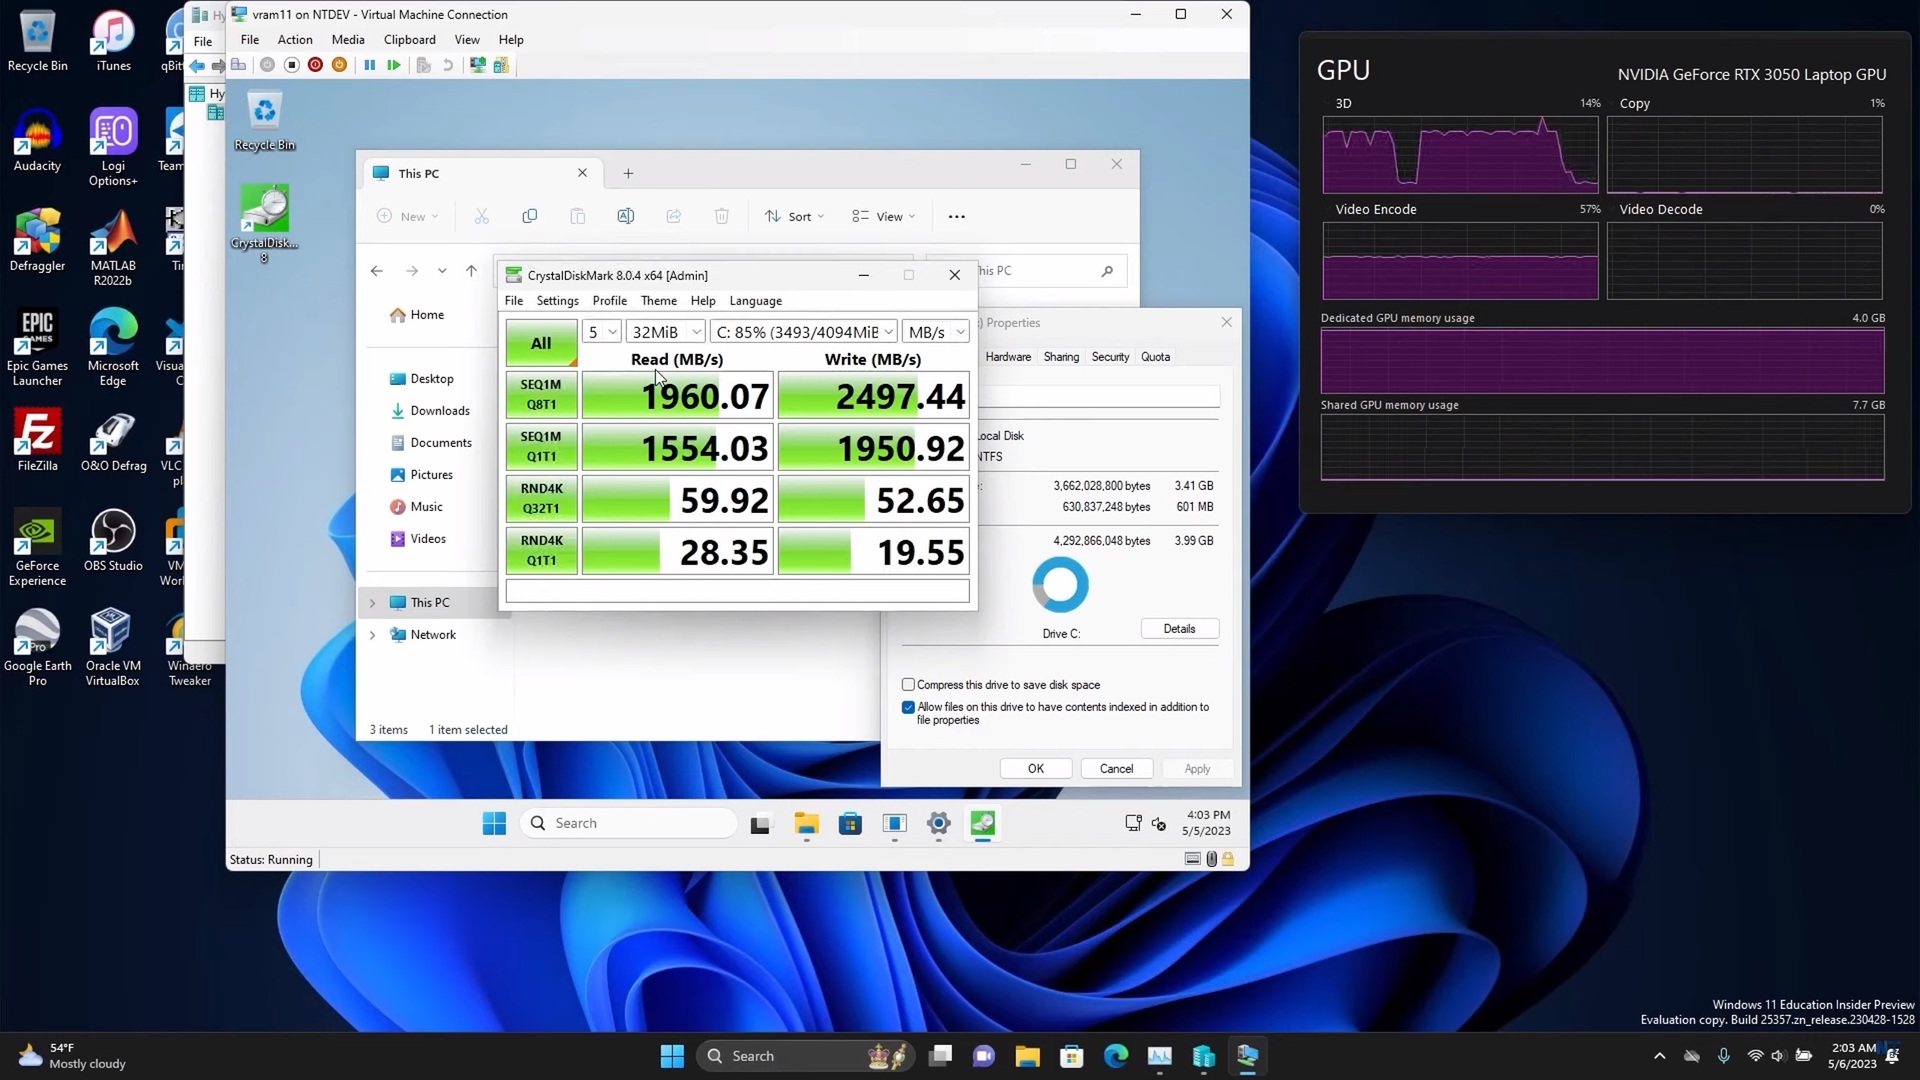 Windows 11 w pamięci karty graficznej - benchmark